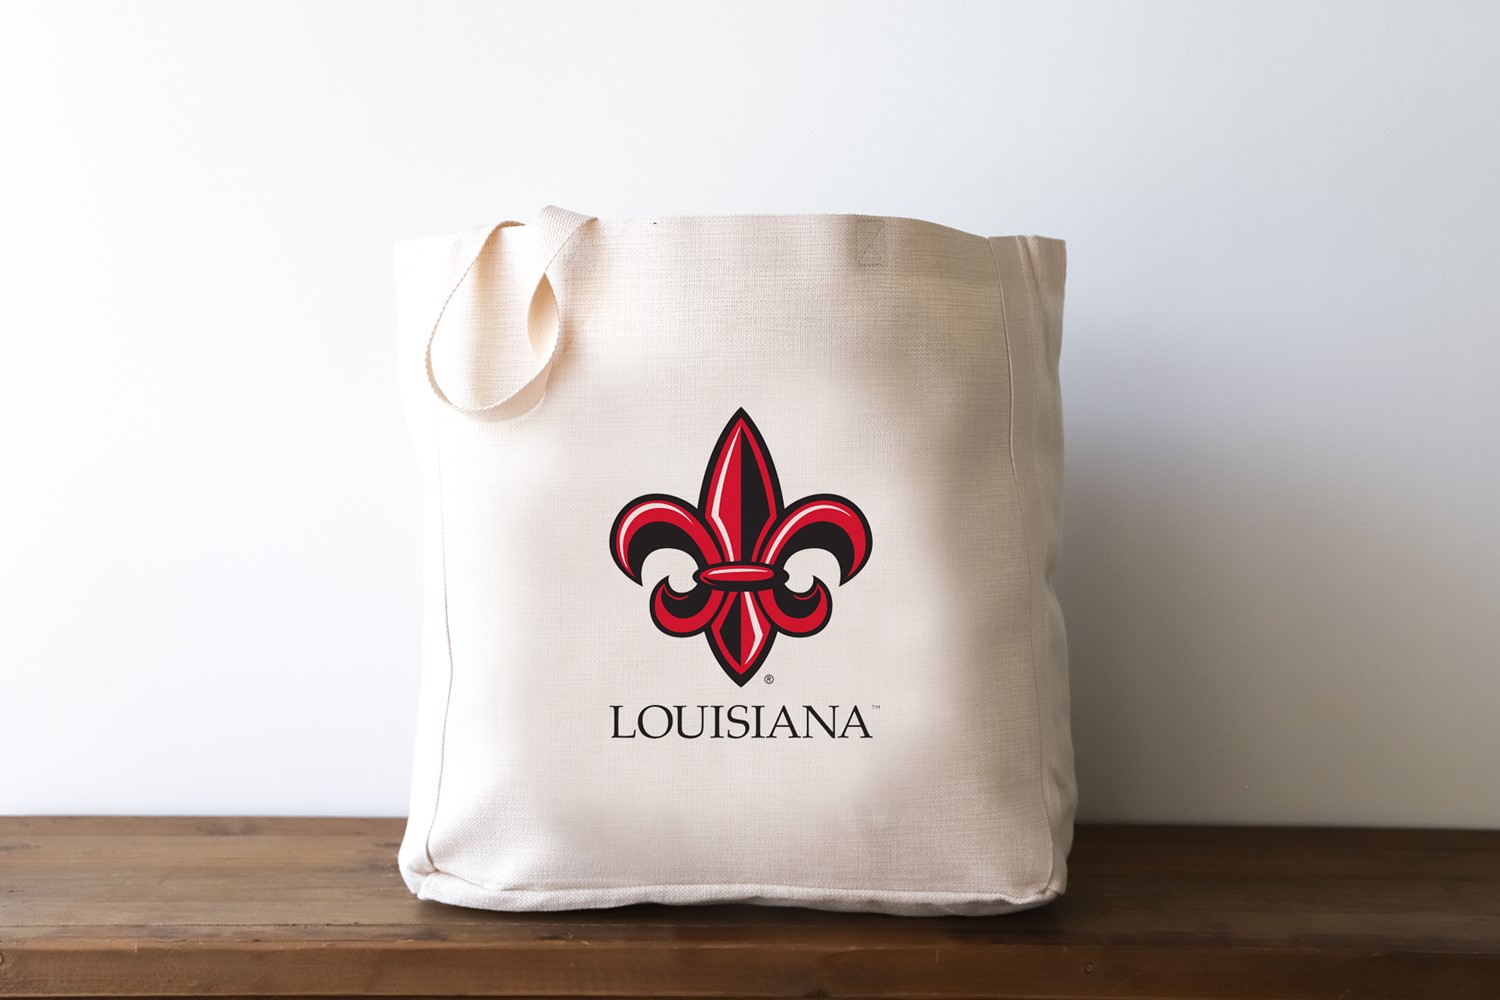 University of Louisiana at Lafayette Purses, University of Louisiana at  Lafayette Handbags